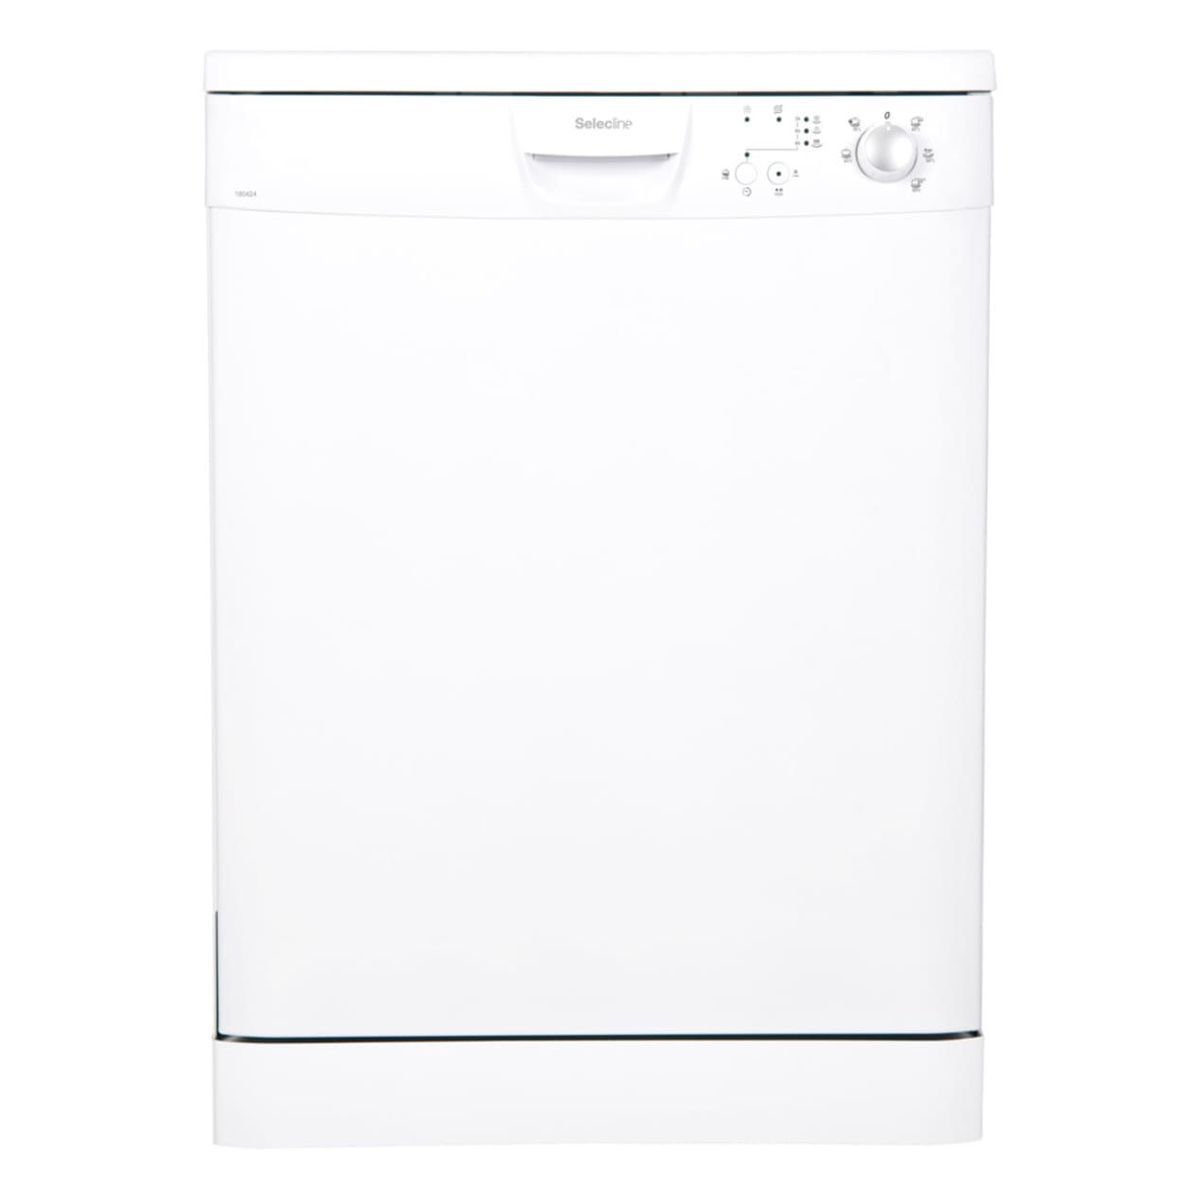 SELECLINE Lave vaisselle pose libre 600081674, 12 couverts, 60 cm, 49 dB, 5 programmes, E